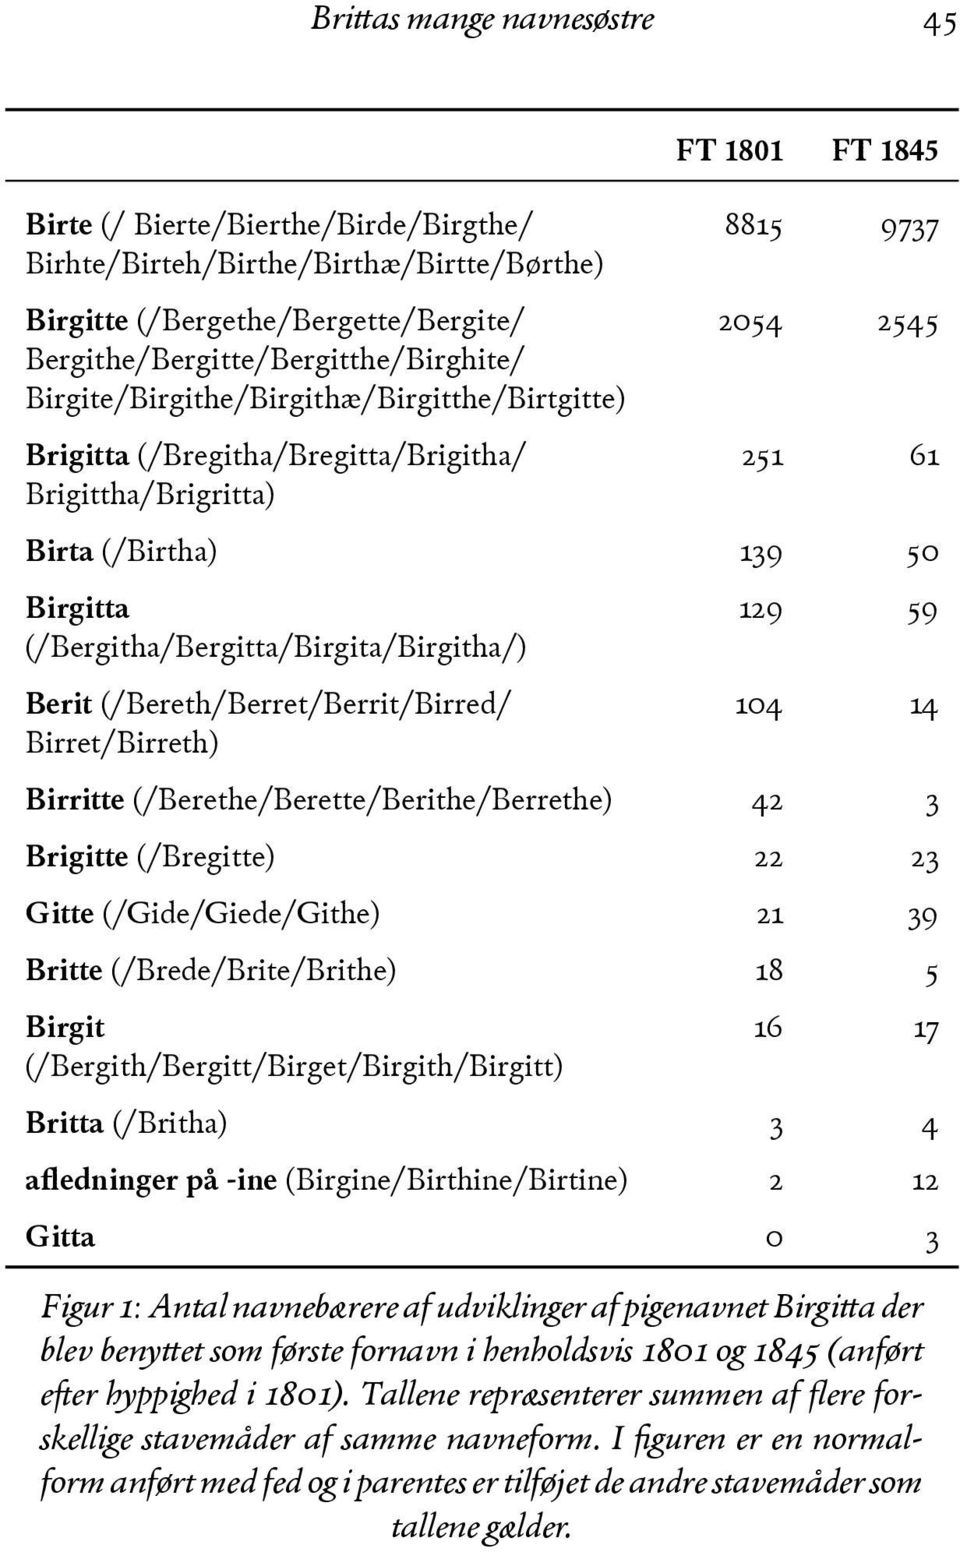 ) (& Birgitta (/Bergitha/Bergitta/Birgita/Birgitha/) Berit (/Bereth/Berret/Berrit/Birred/ Birret/Birreth) -%) () -&+ -+ Birritte (/Berethe/Berette/Berithe/Berrethe) +%. Brigitte (/Bregitte) %% %.